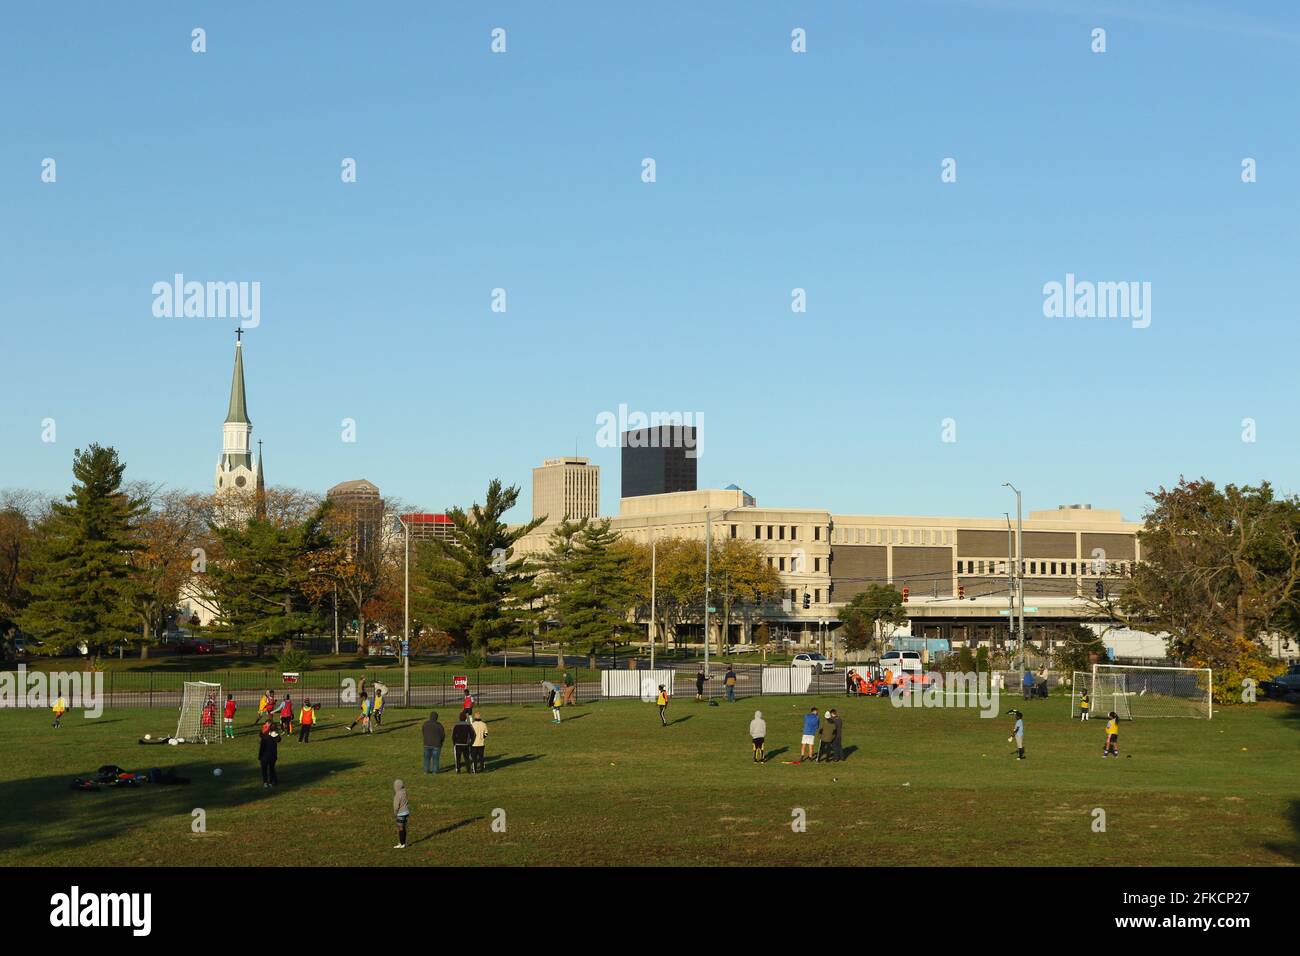 Les jeunes pratiquent le football devant un horizon de la ville de Dayton. Bomberger Park, Dayton, Ohio, États-Unis. Banque D'Images